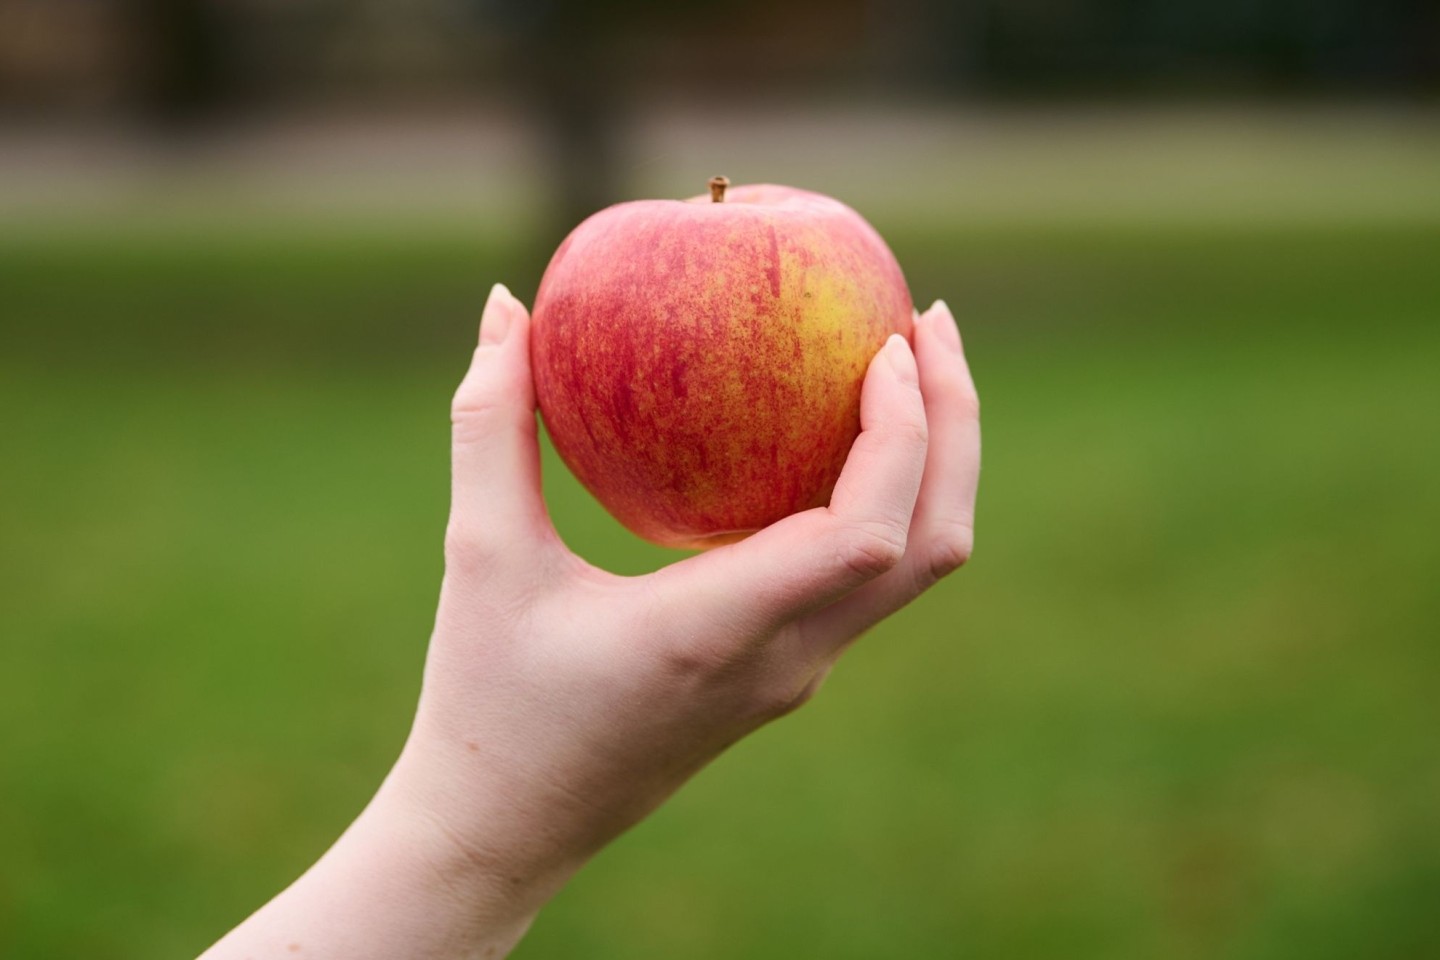 Äpfel sind nicht nur gesund, sondern spielen auch in der Kulturgeschichte eine große Rolle.